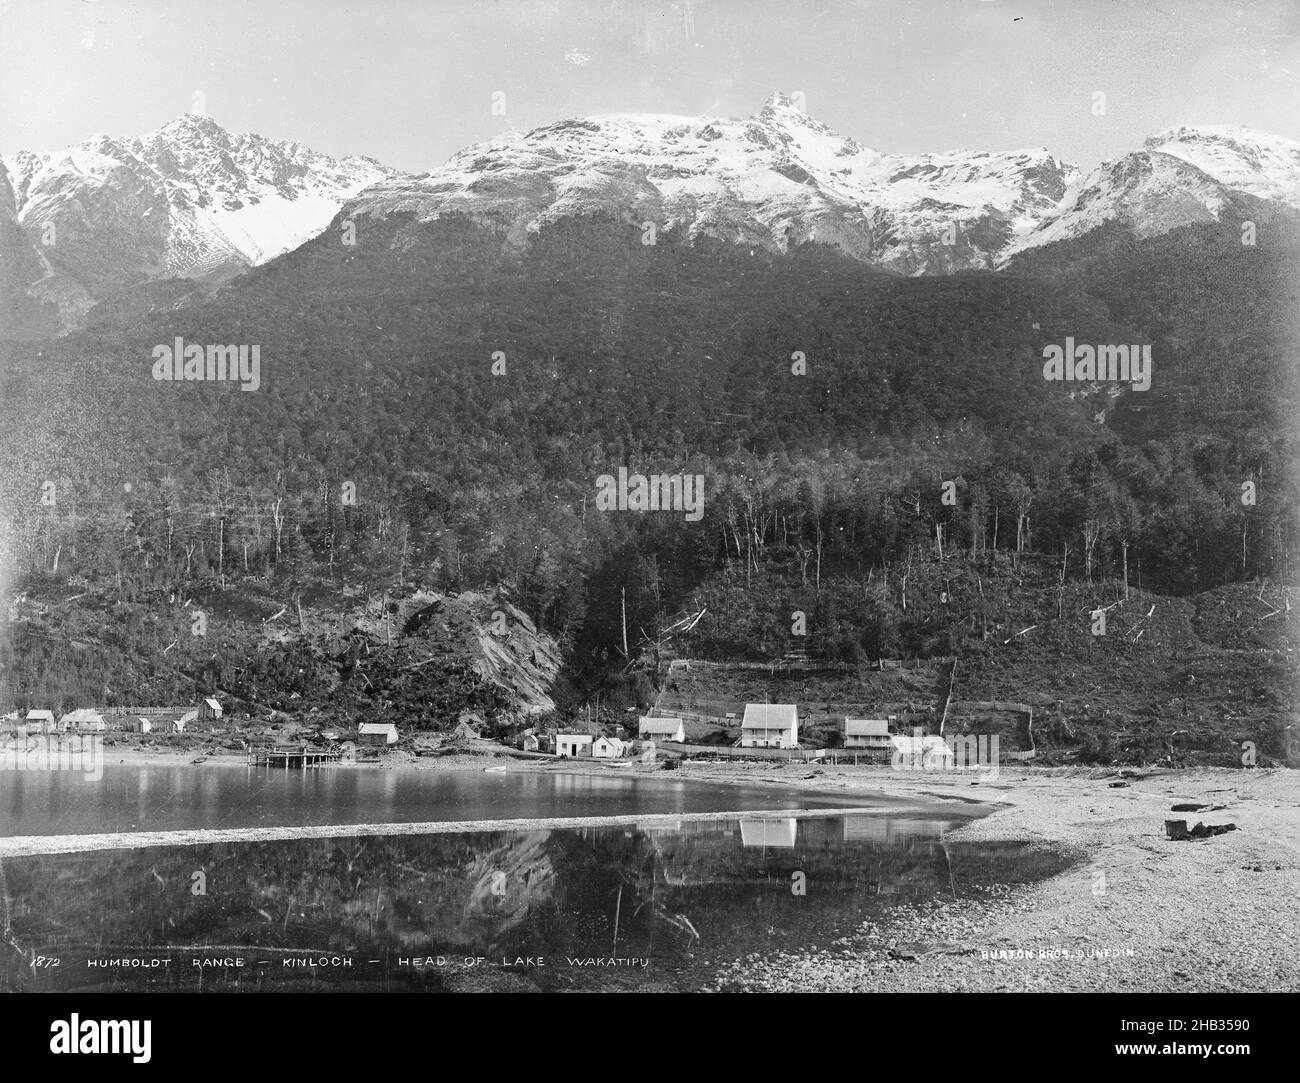 Humboldt Range, Kinloch, responsable du lac Wakatipu, studio Burton Brothers, studio de photographie, 1883, Nouvelle-Zélande,photographie en noir et blanc Banque D'Images